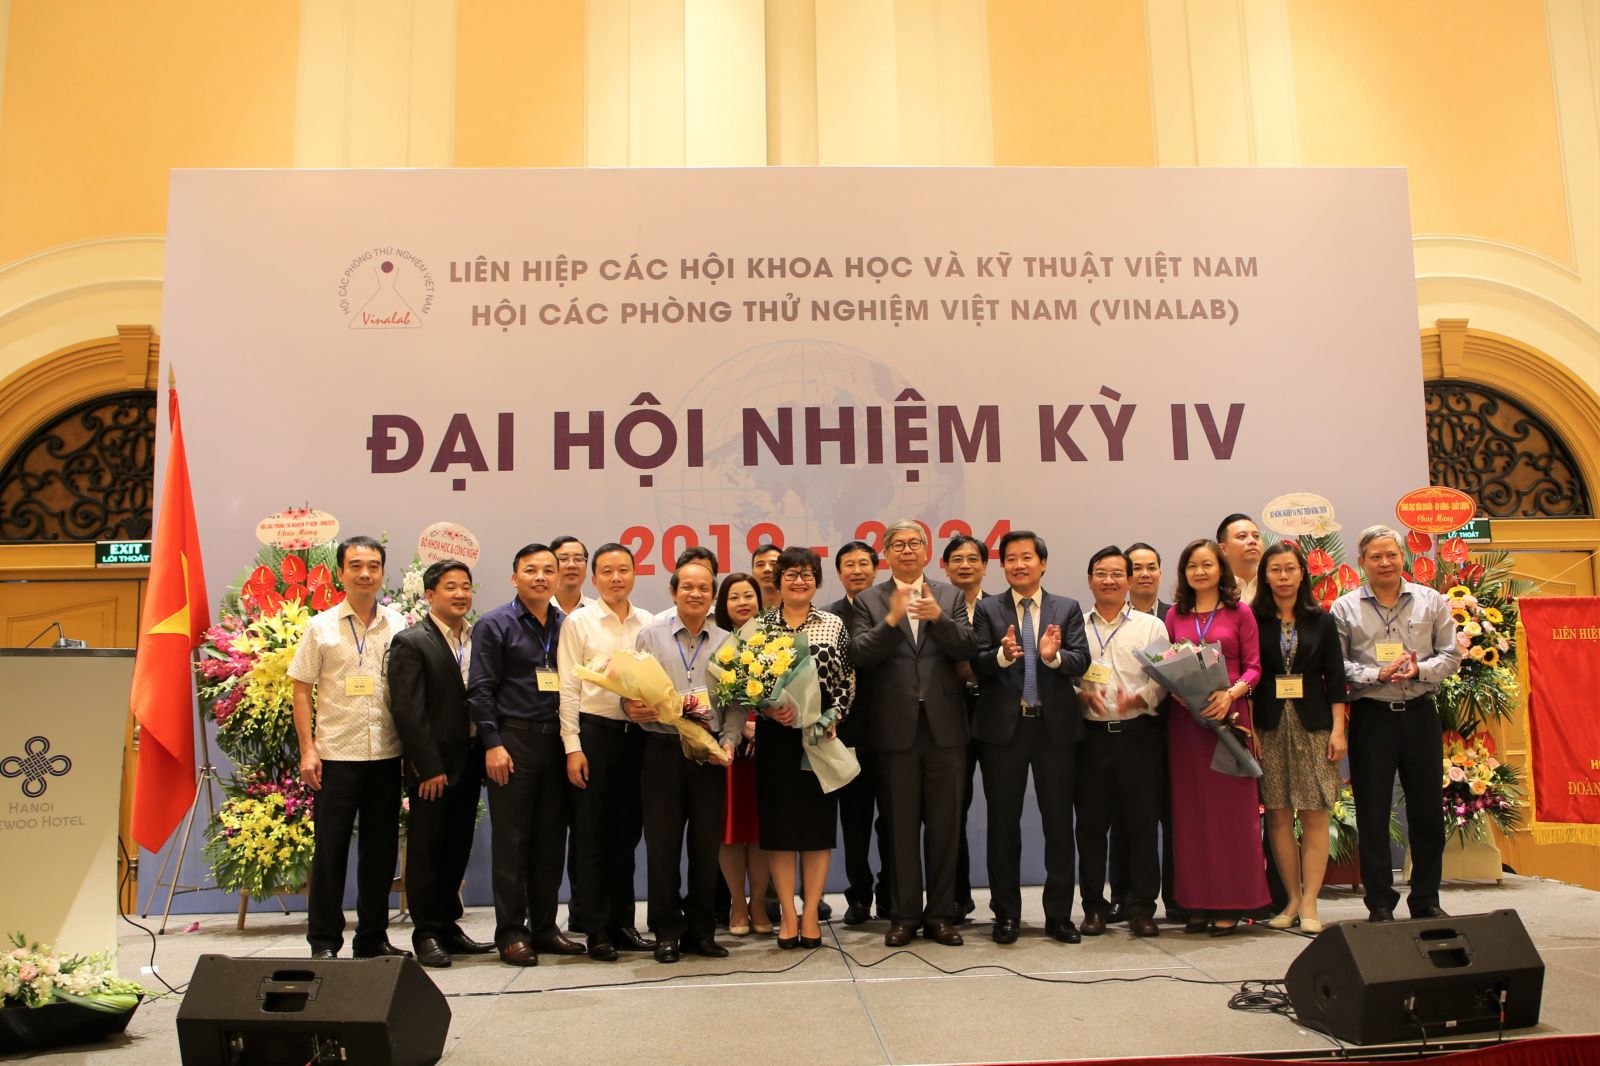 GS.TS Đặng Vũ Minh chúc mừng các đồng chí trong BCH VinaLAB Khóa IV. Ảnh Vũ Hải